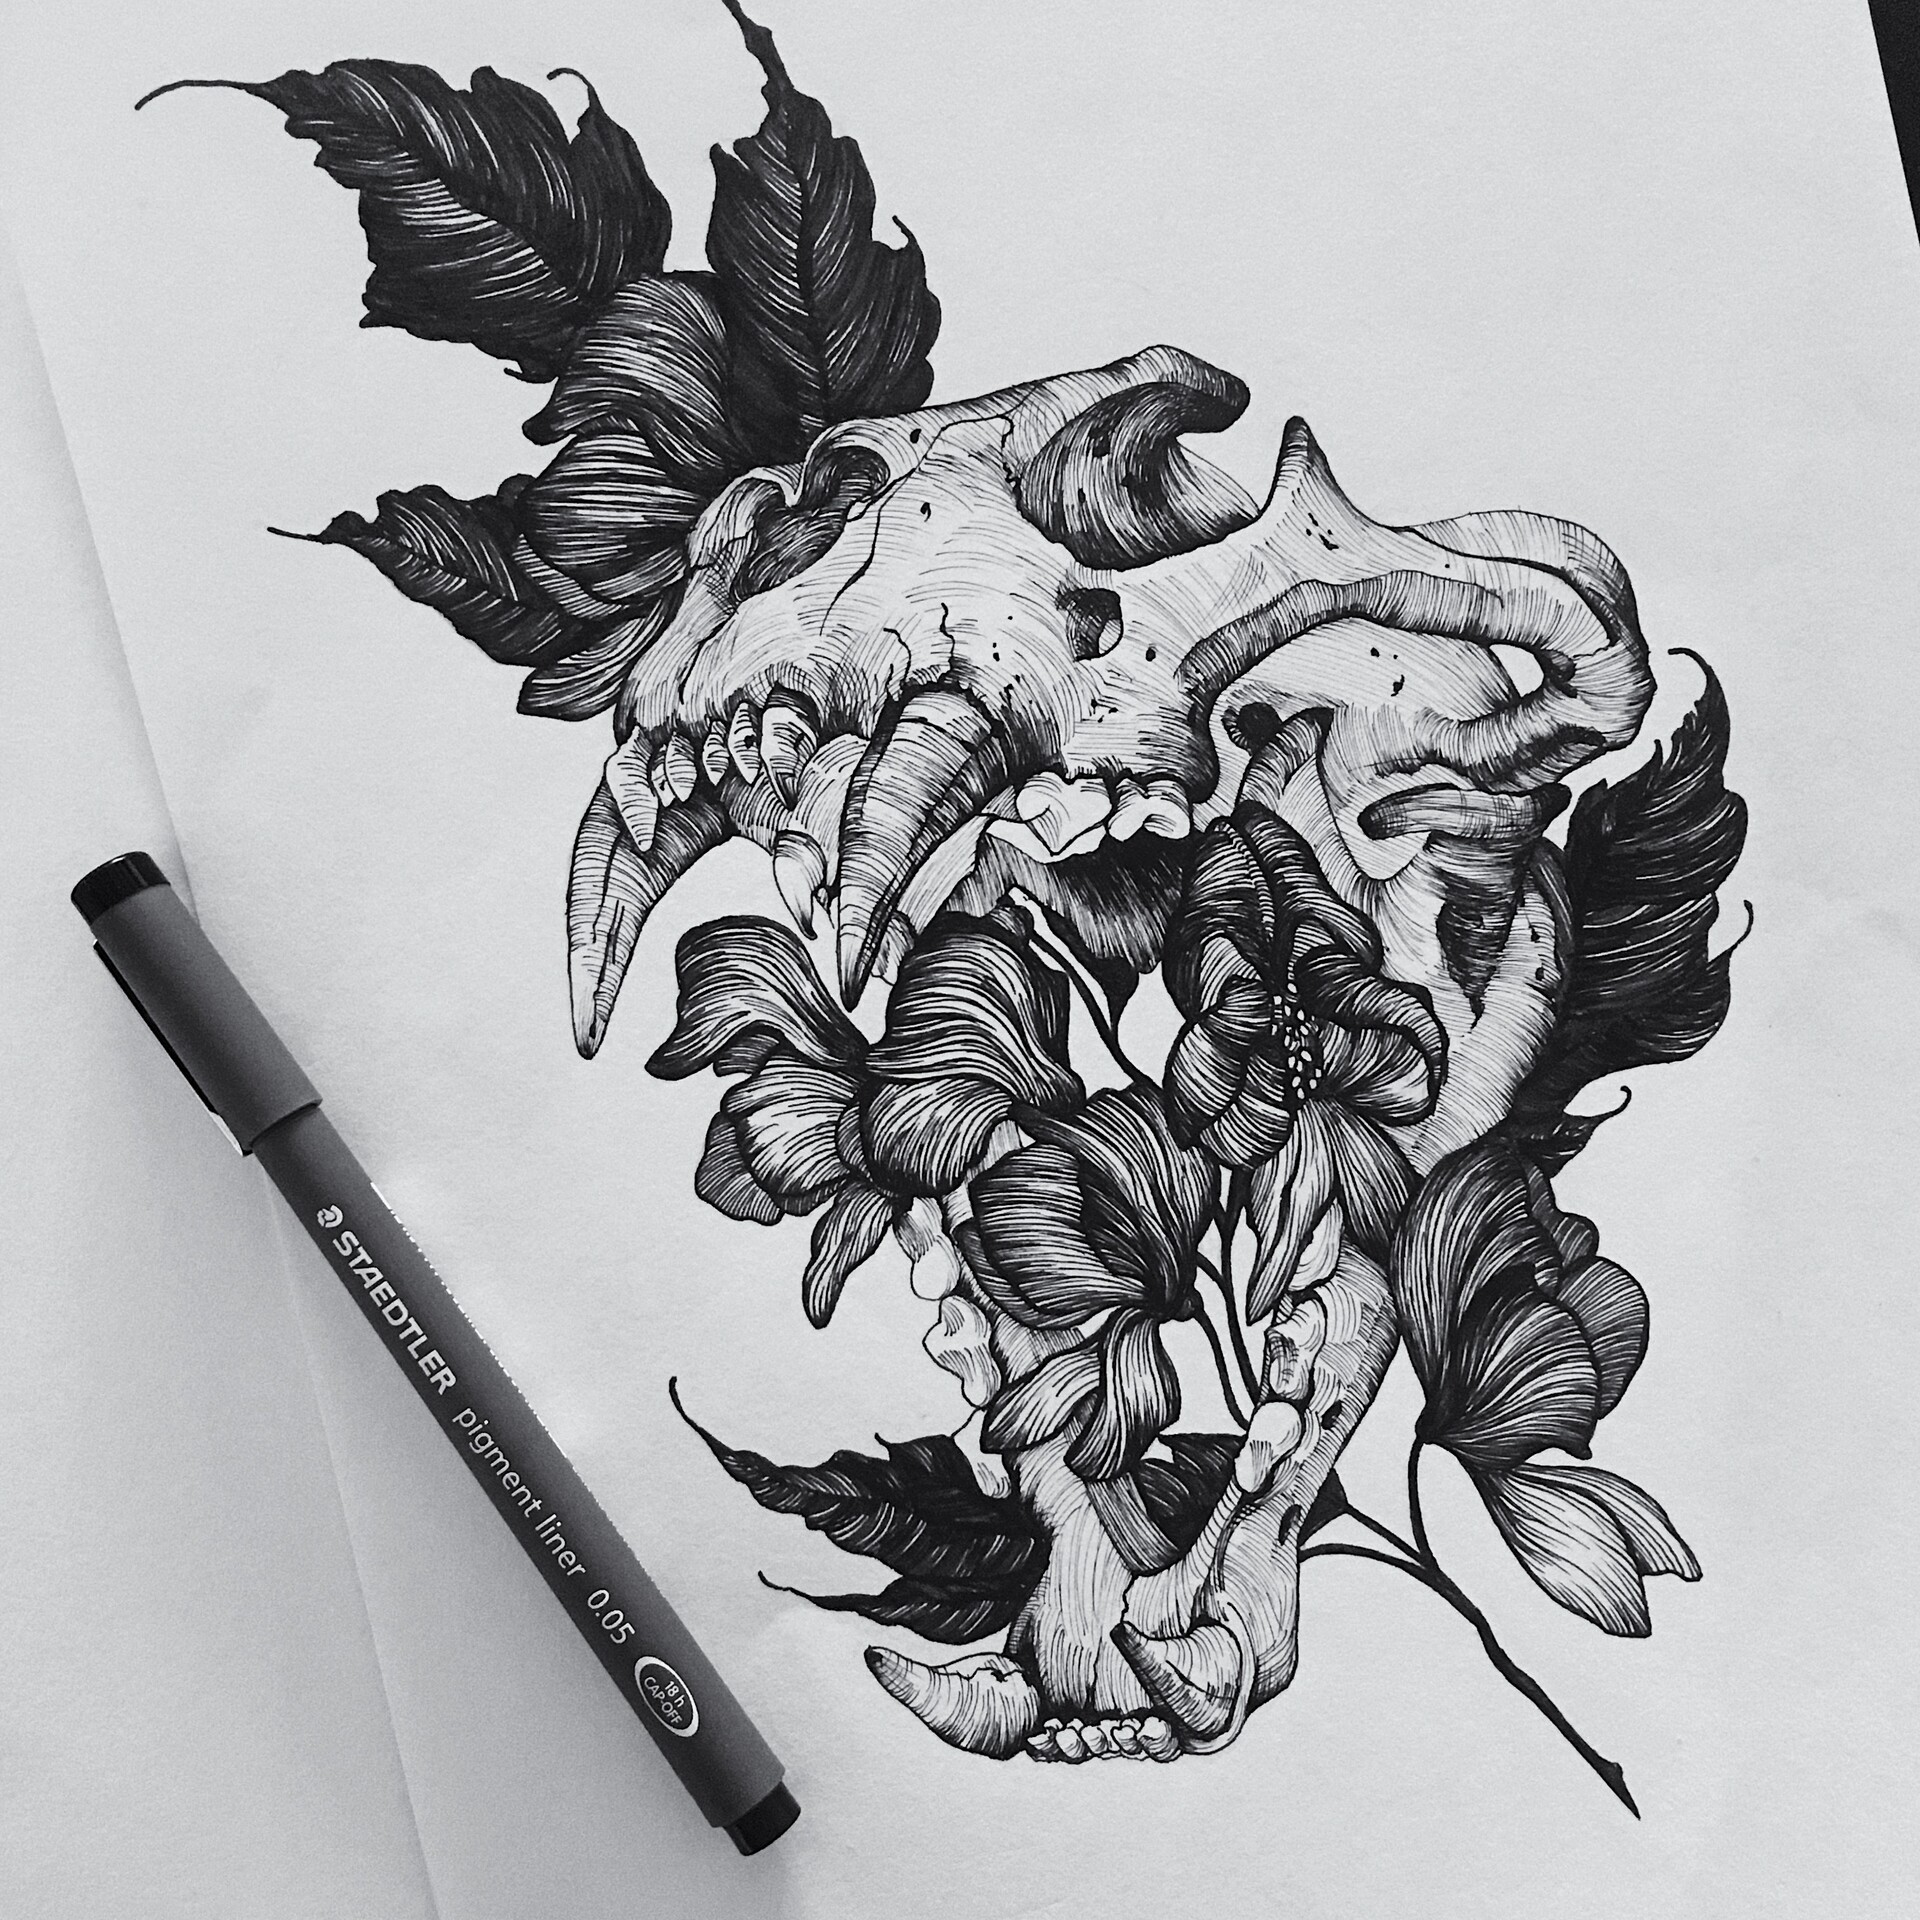 ArtStation - Pen & Ink Drawings